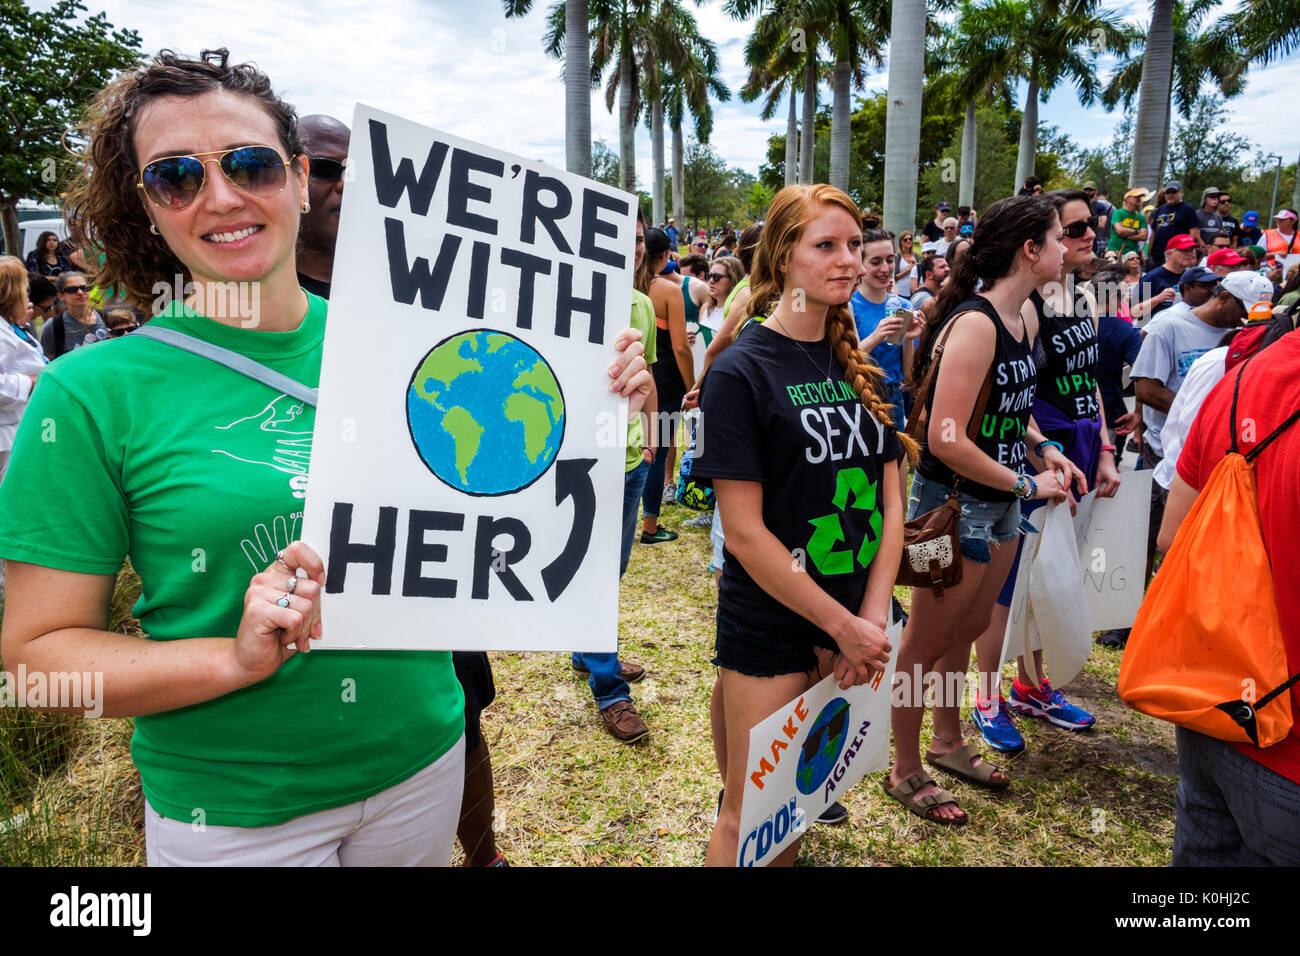 Miami Florida,Museum Park,March for Science,Protest,rallye,panneau,affiche,protester,femme femme femme,élève FL170430113 Banque D'Images